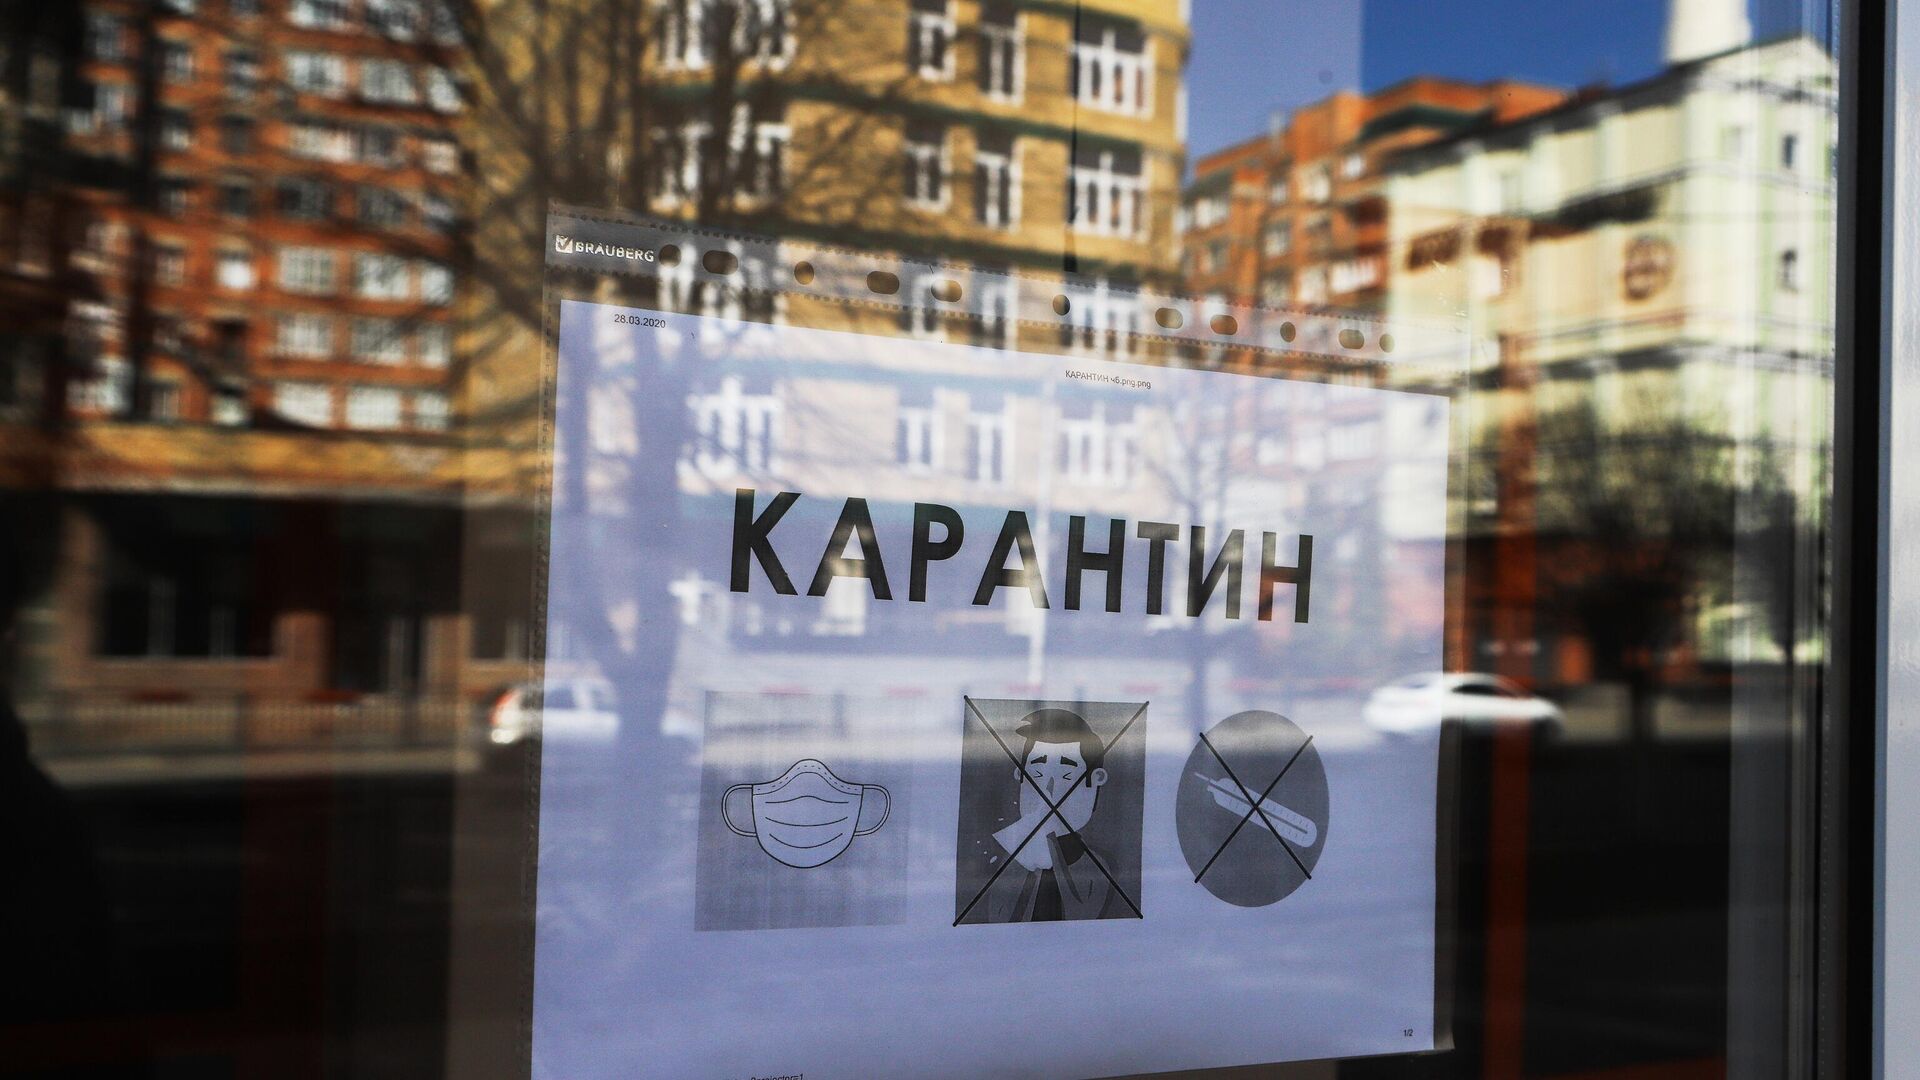 Объявление о карантине в окне кафе - РИА Новости, 1920, 29.04.2020